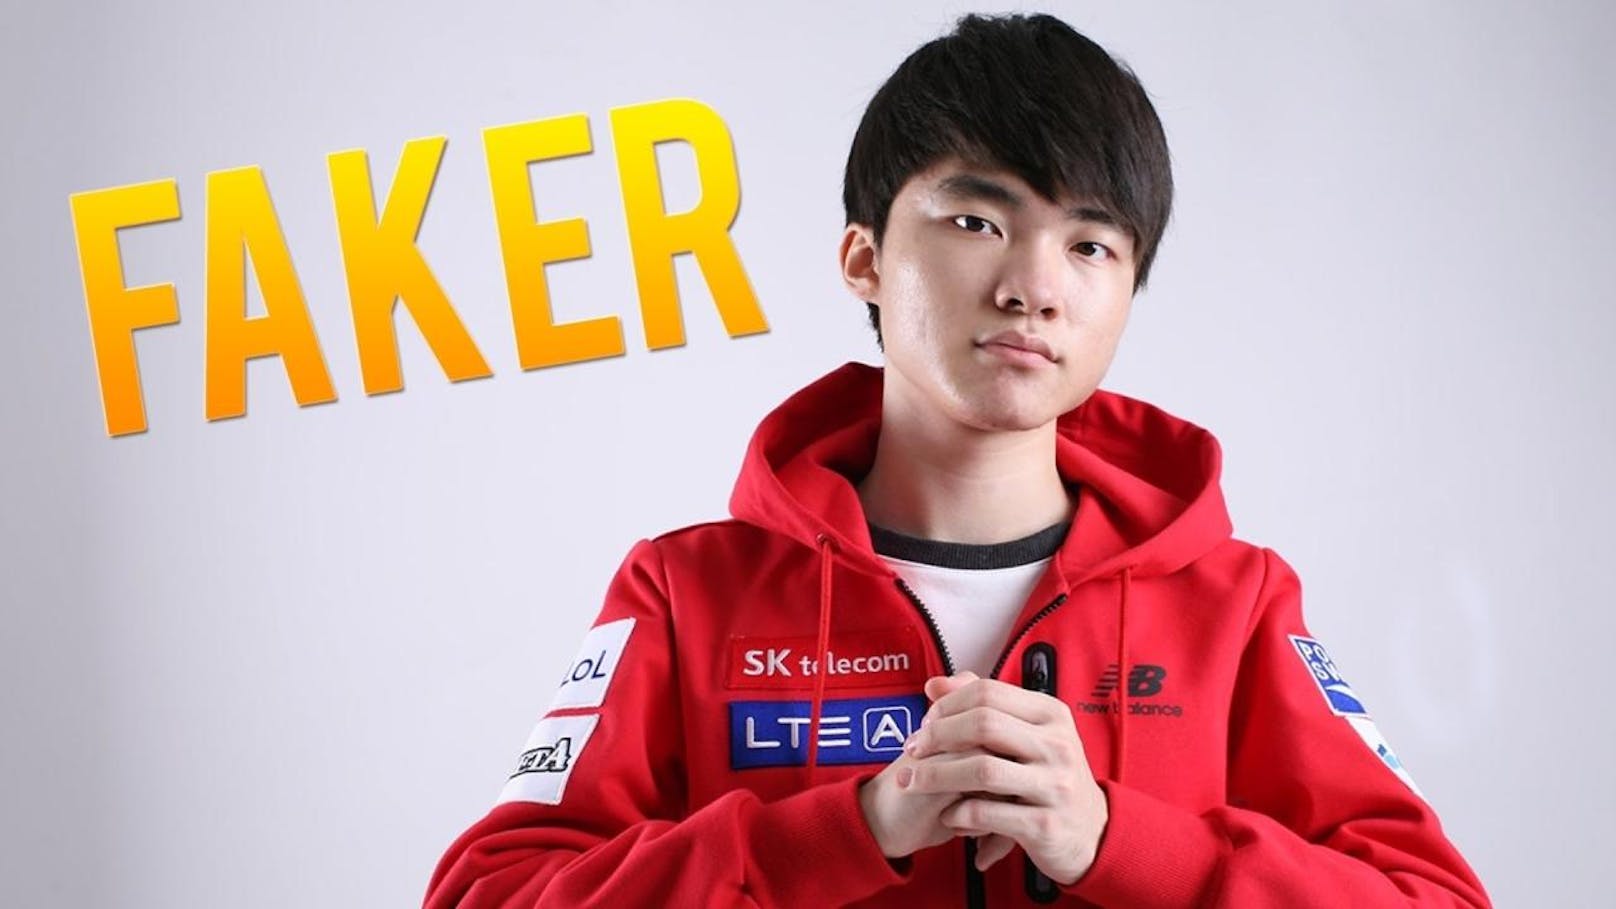 <b>Best eSports Player</b>
Lee sang-hyeok "Faker" (SK Telecom 1, League of Legends)